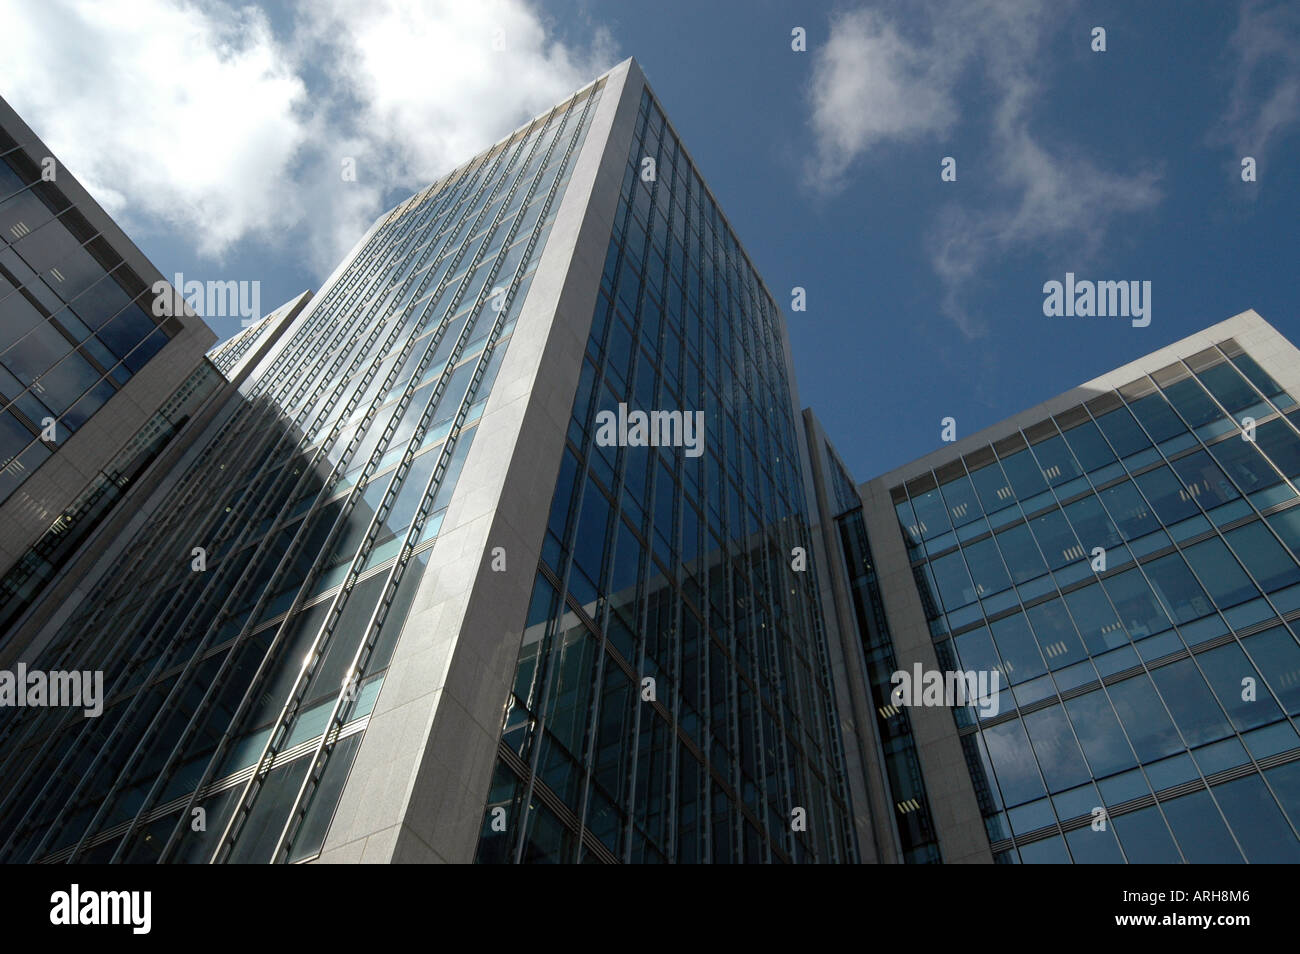 Une vue générale de l'administration centrale de l'Ulster Bank Building, représenté à la ville de Dublin en Irlande. Banque D'Images